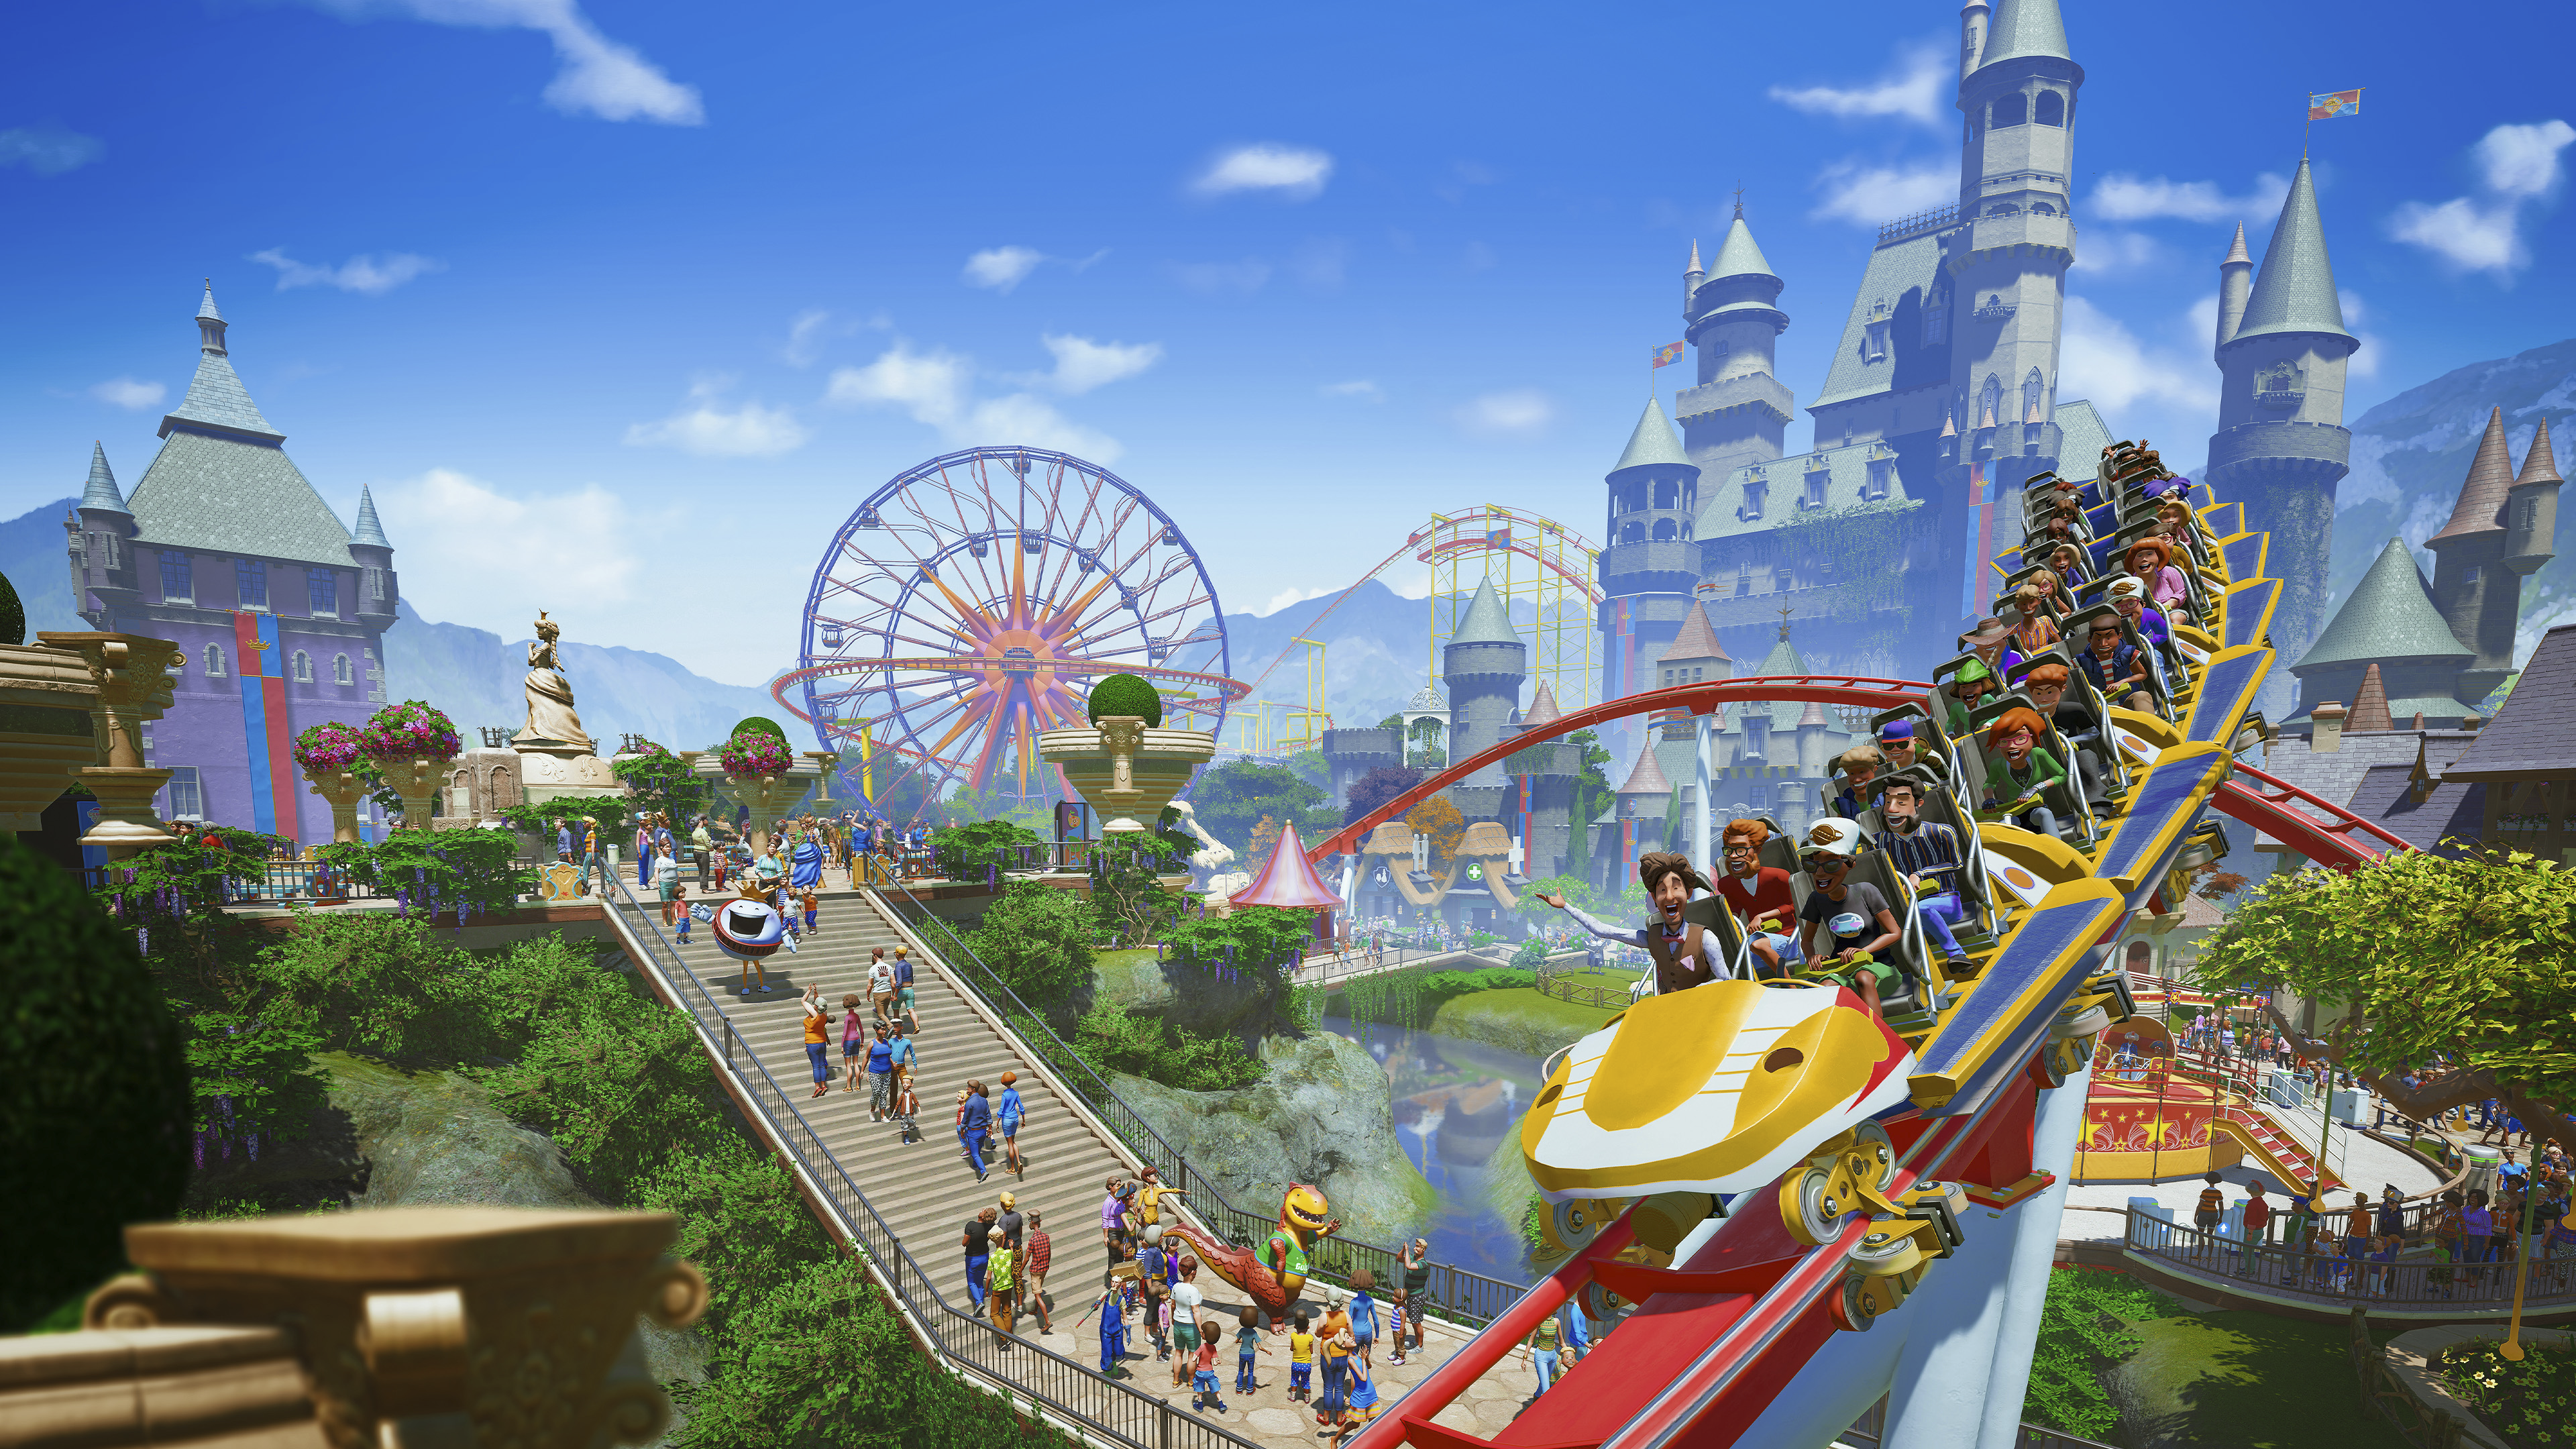 صورة فنية أساسية من لعبة Planet Coaster تعرض منظرًا علويًا لمدينة ألعاب مزدحمة.